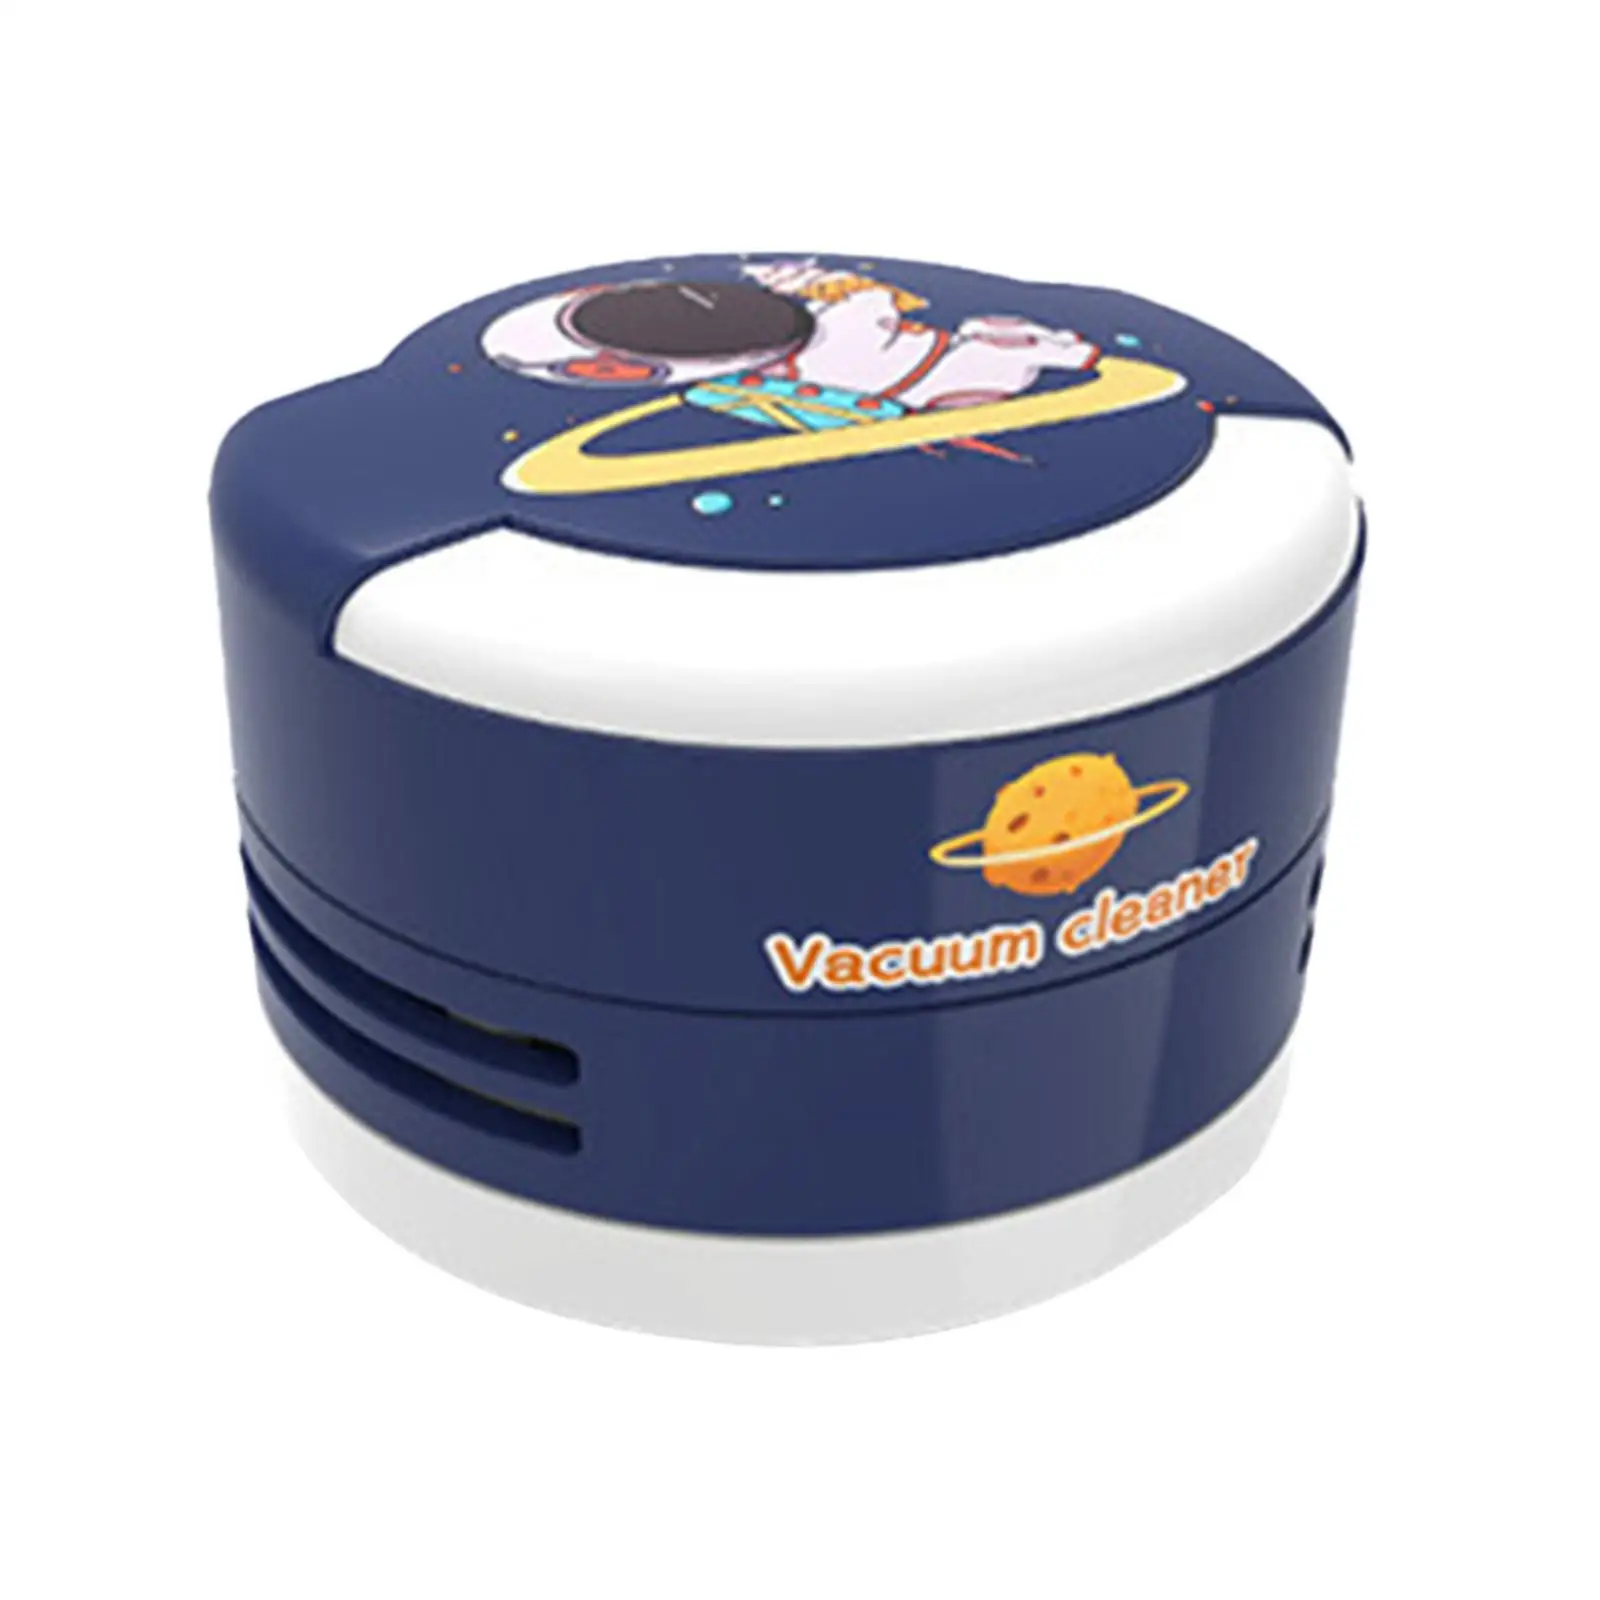 3Pcs Electric Stationery Gift Set Desktop Vacuum for Home Classmates Parents